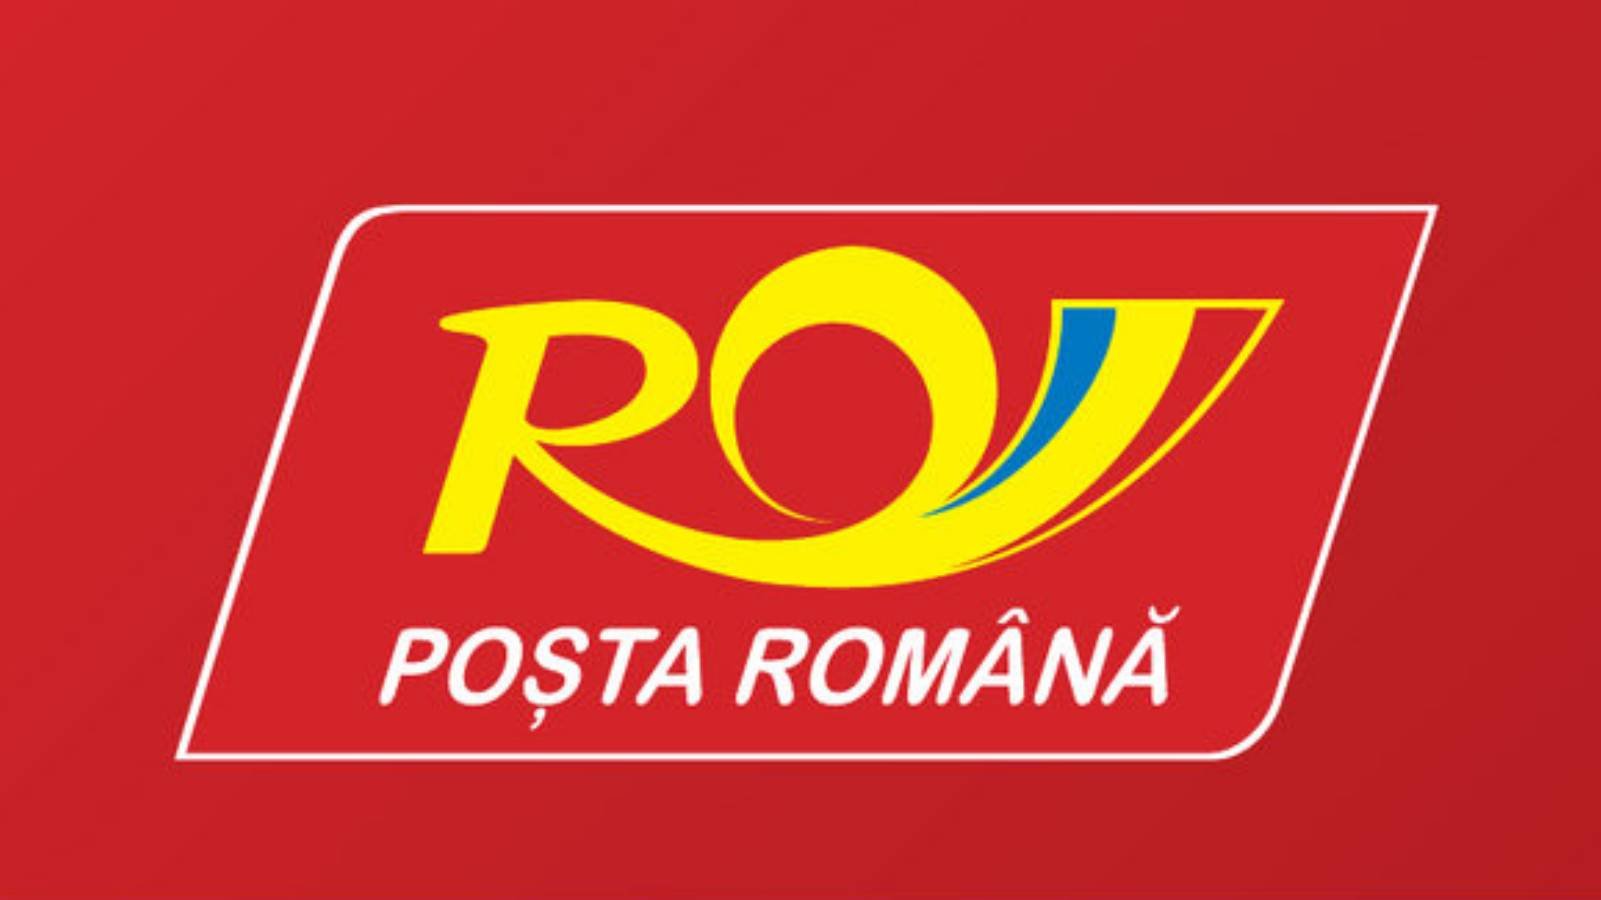 Roemeense postpostaankondigingen